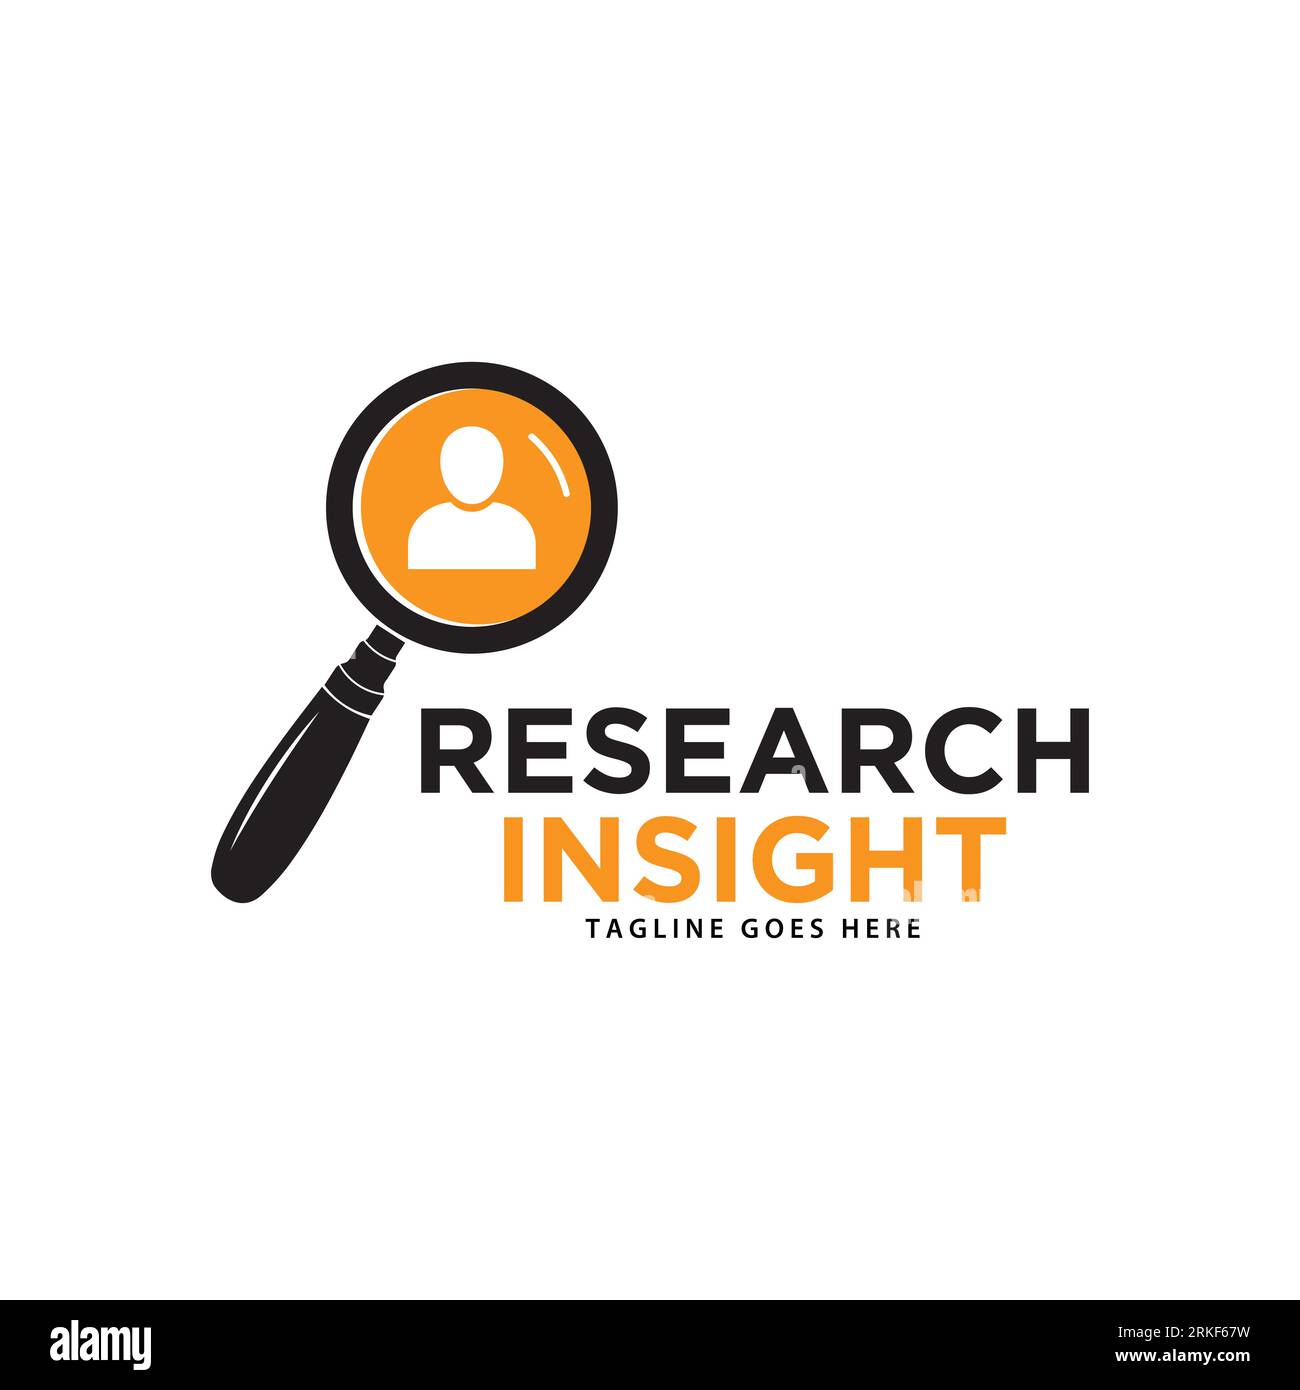 Vektorvorlage für das Logo von Research Insight. Research-Logo mit schlichtem und elegantem Lupensymbol. Stock Vektor